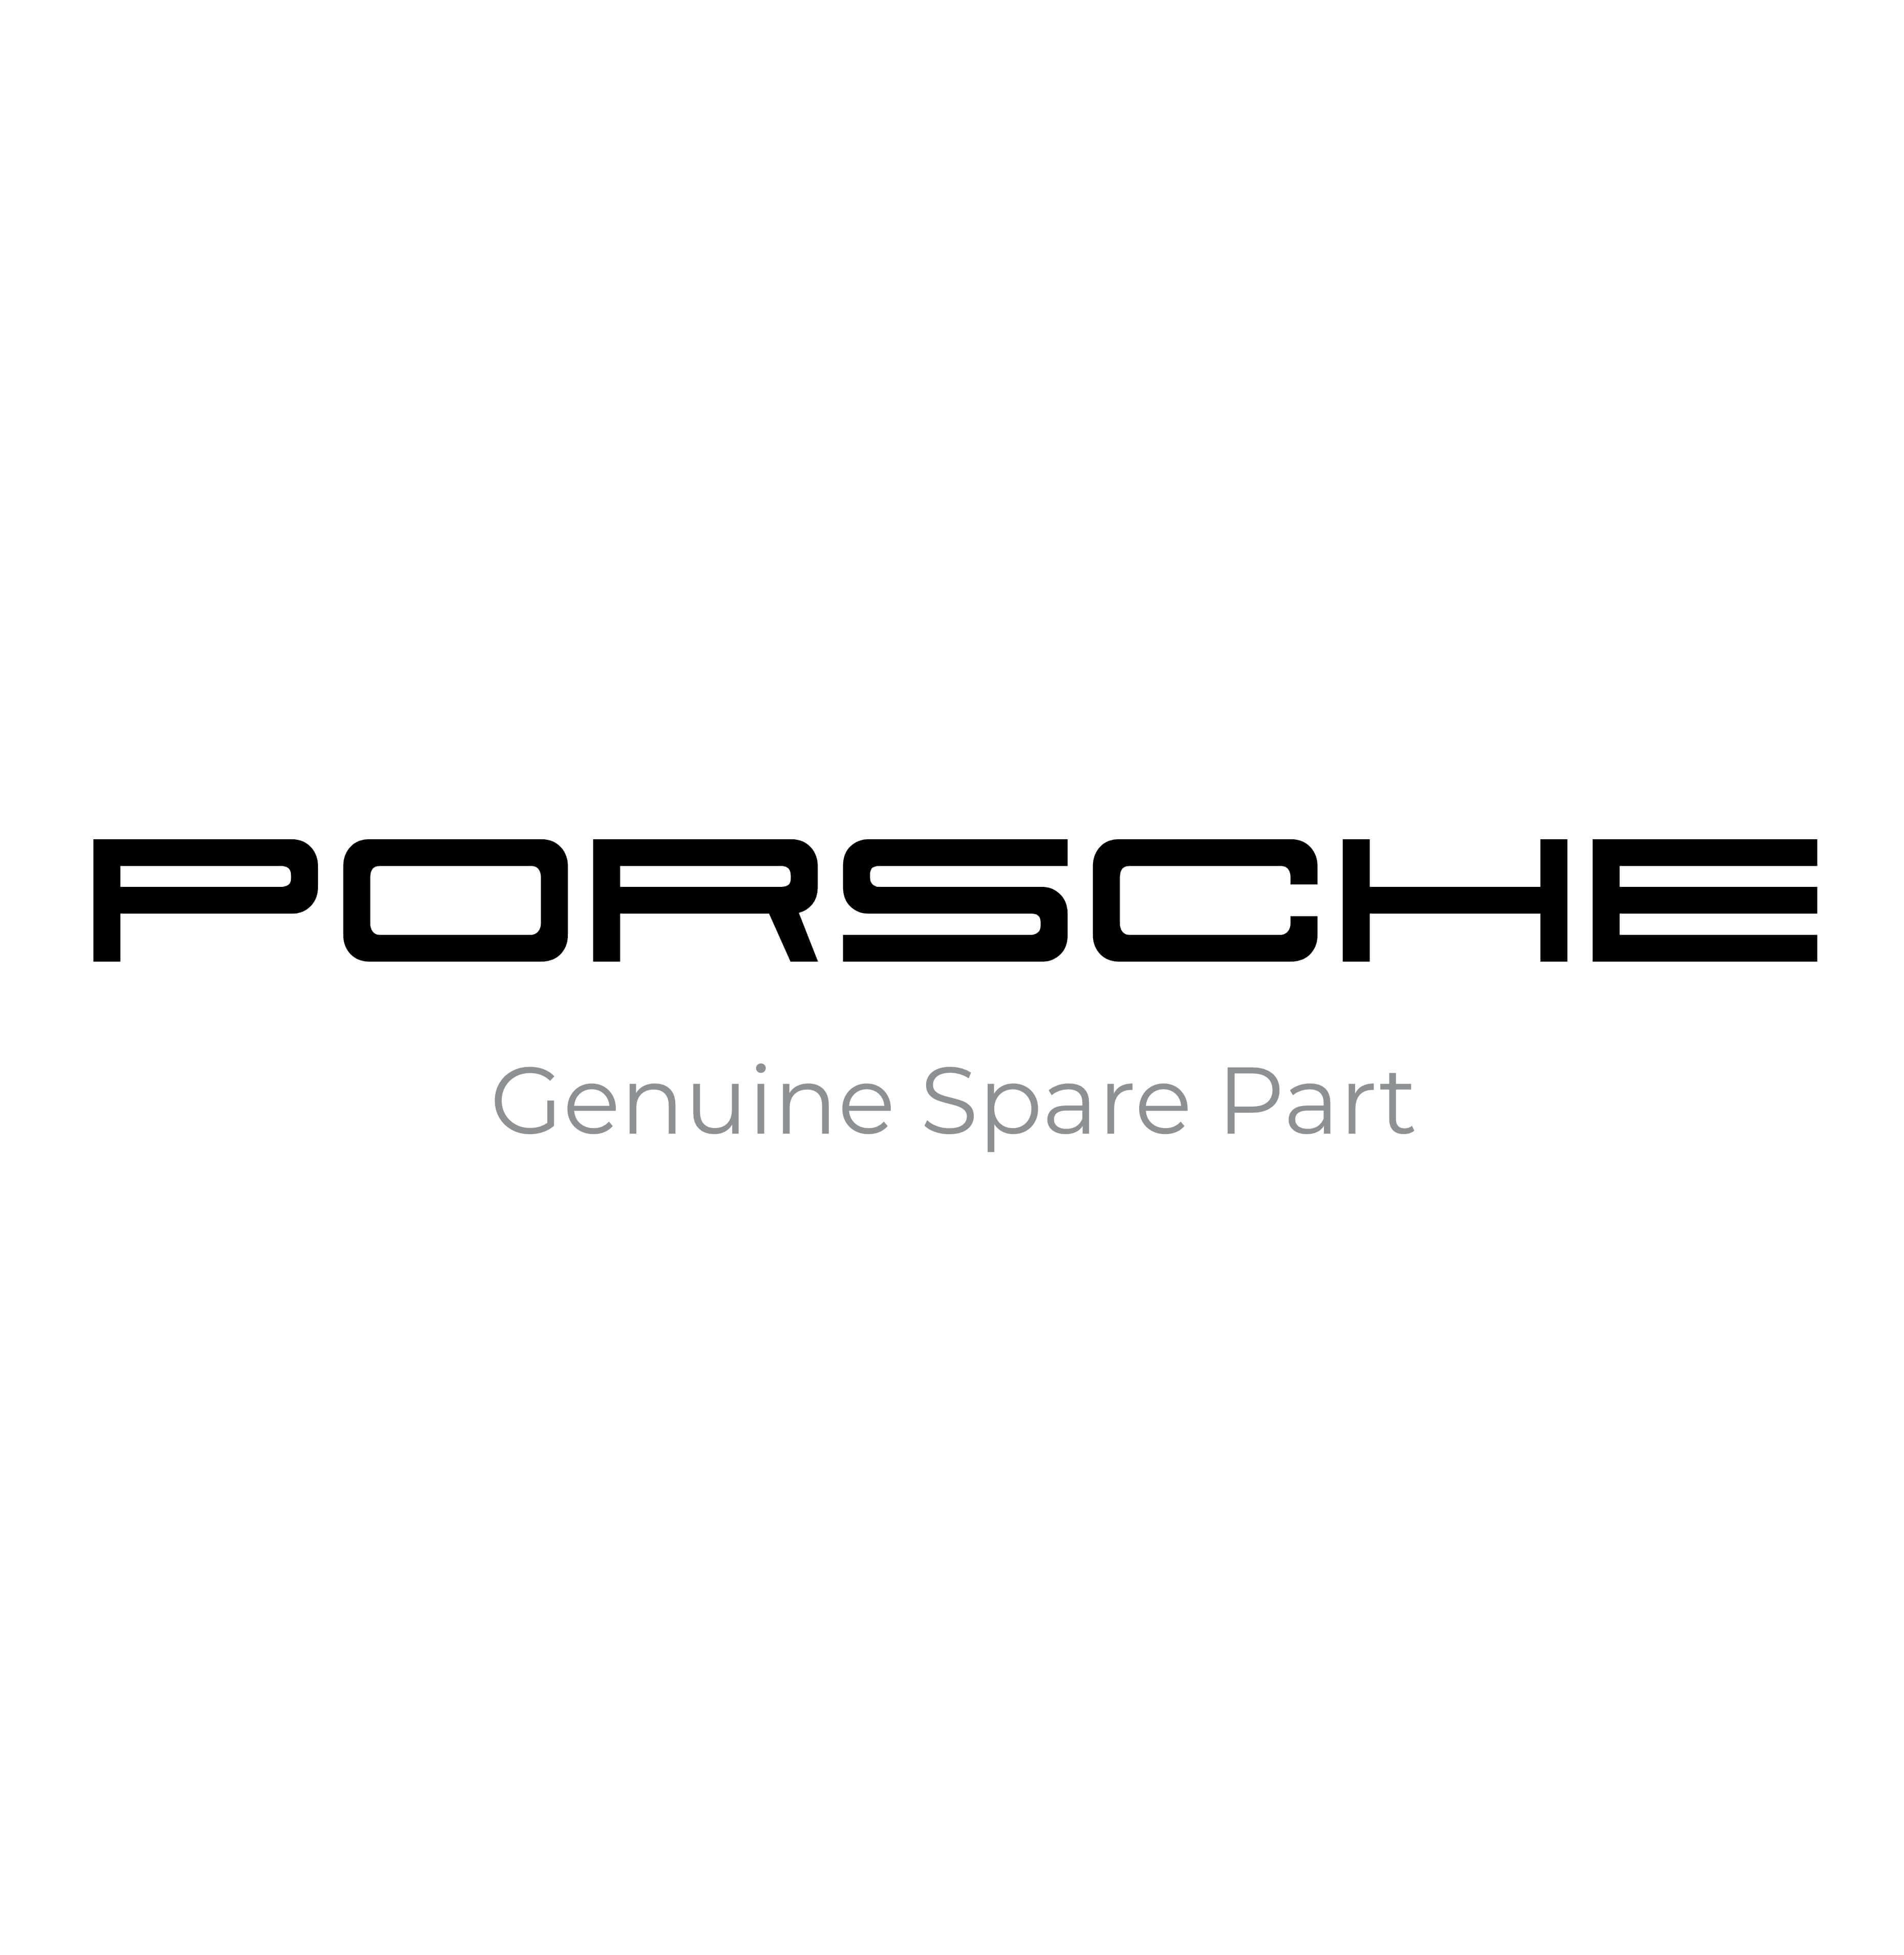 Porsche WVK60679106 Genuine